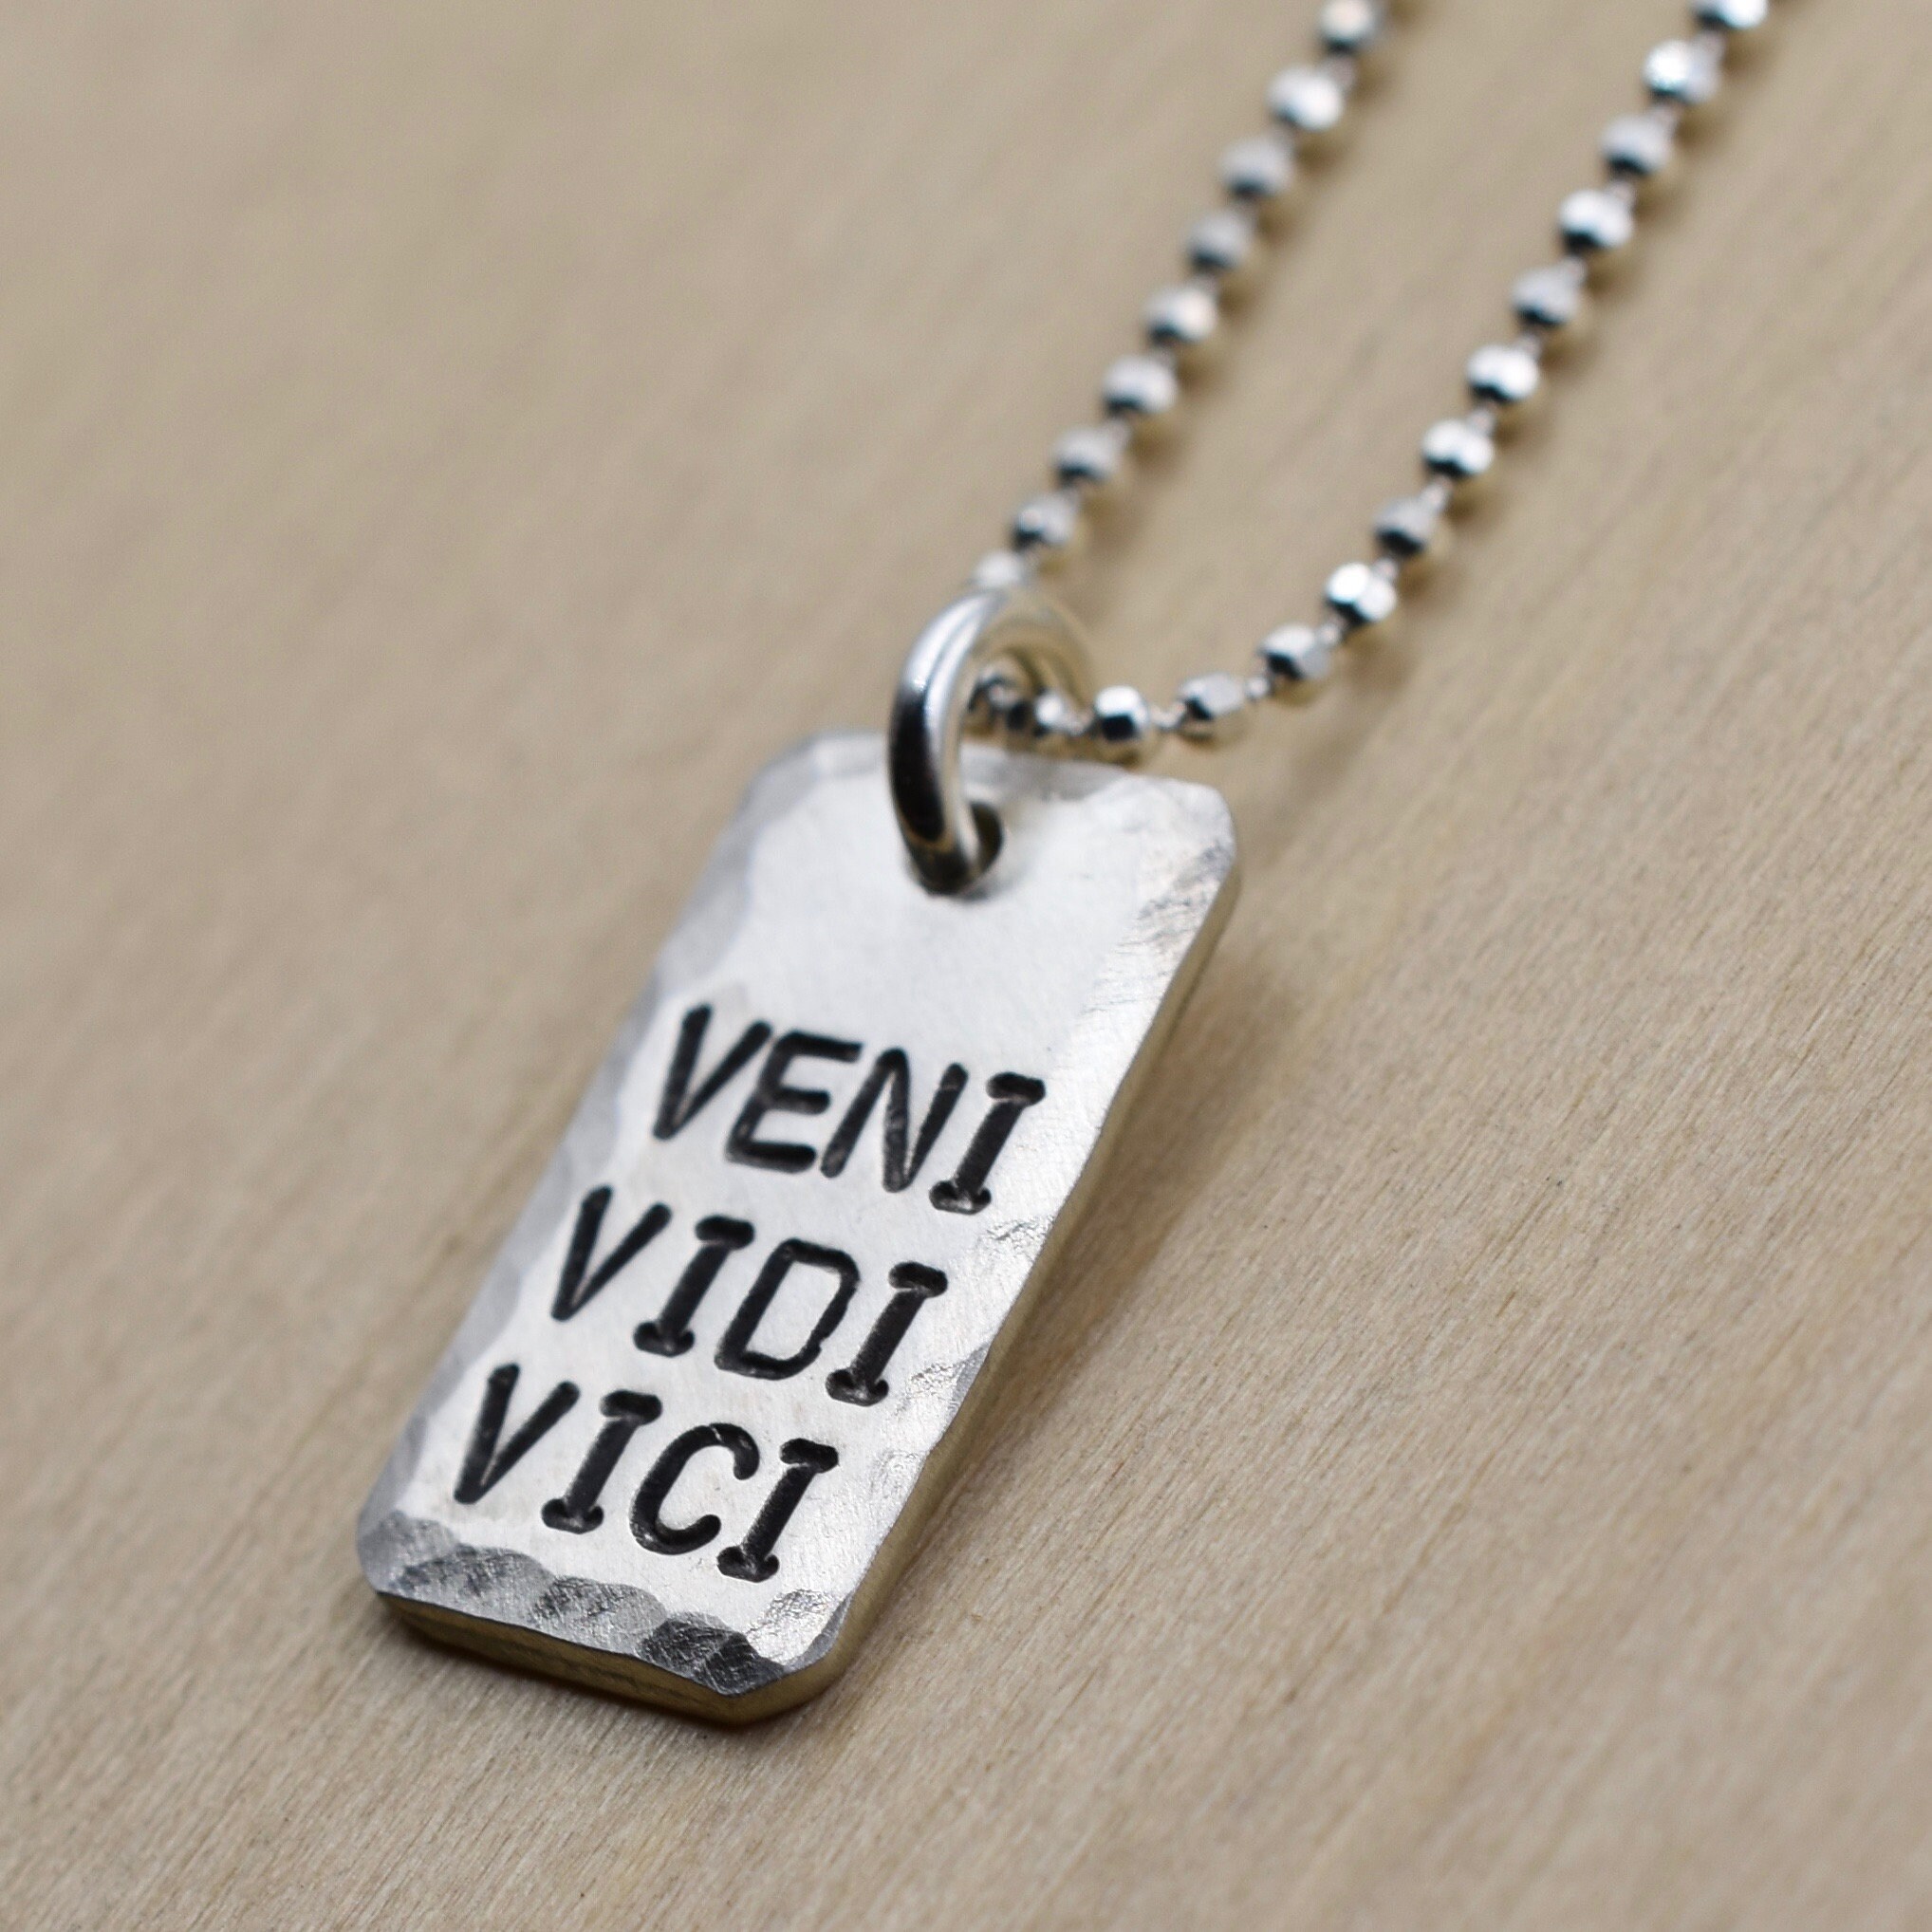  Veni Vidi Vici (I Came, I Saw, I Conquered) Necklace